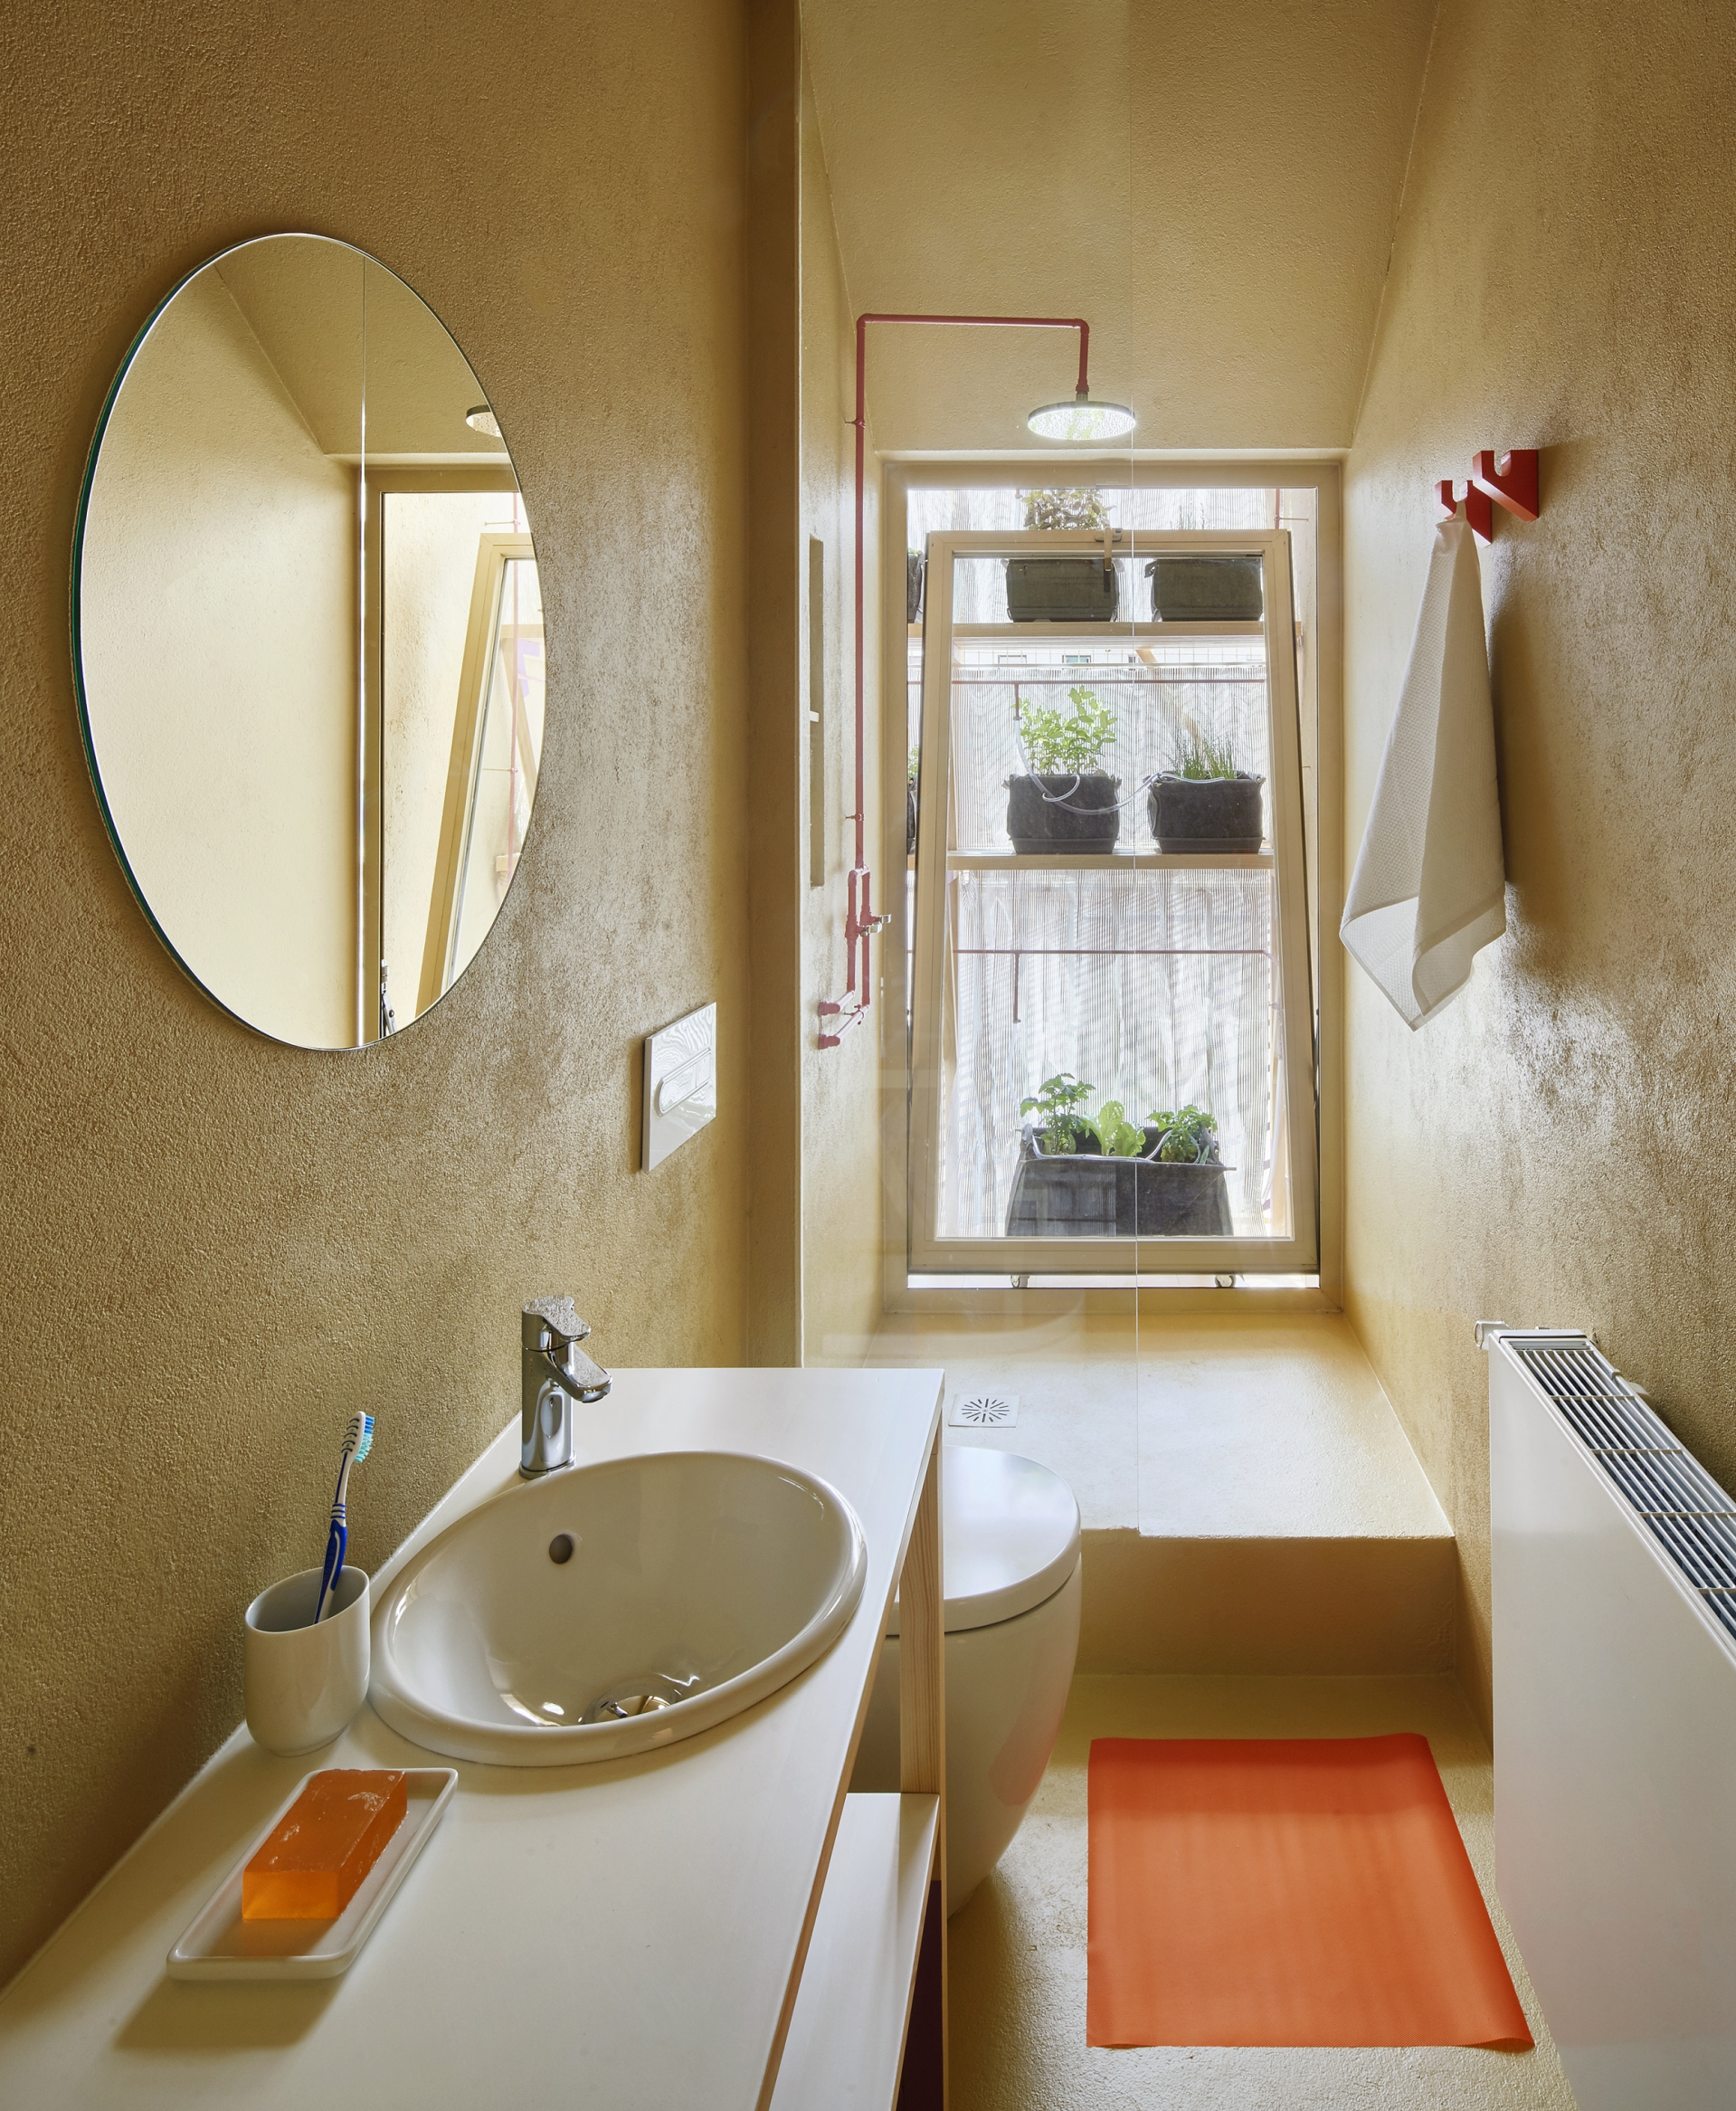 Phòng tắm có thiết kế đơn giản nhưng ấn tượng với ô cửa kính cùng những điểm nhấn màu cam bắt mắt.